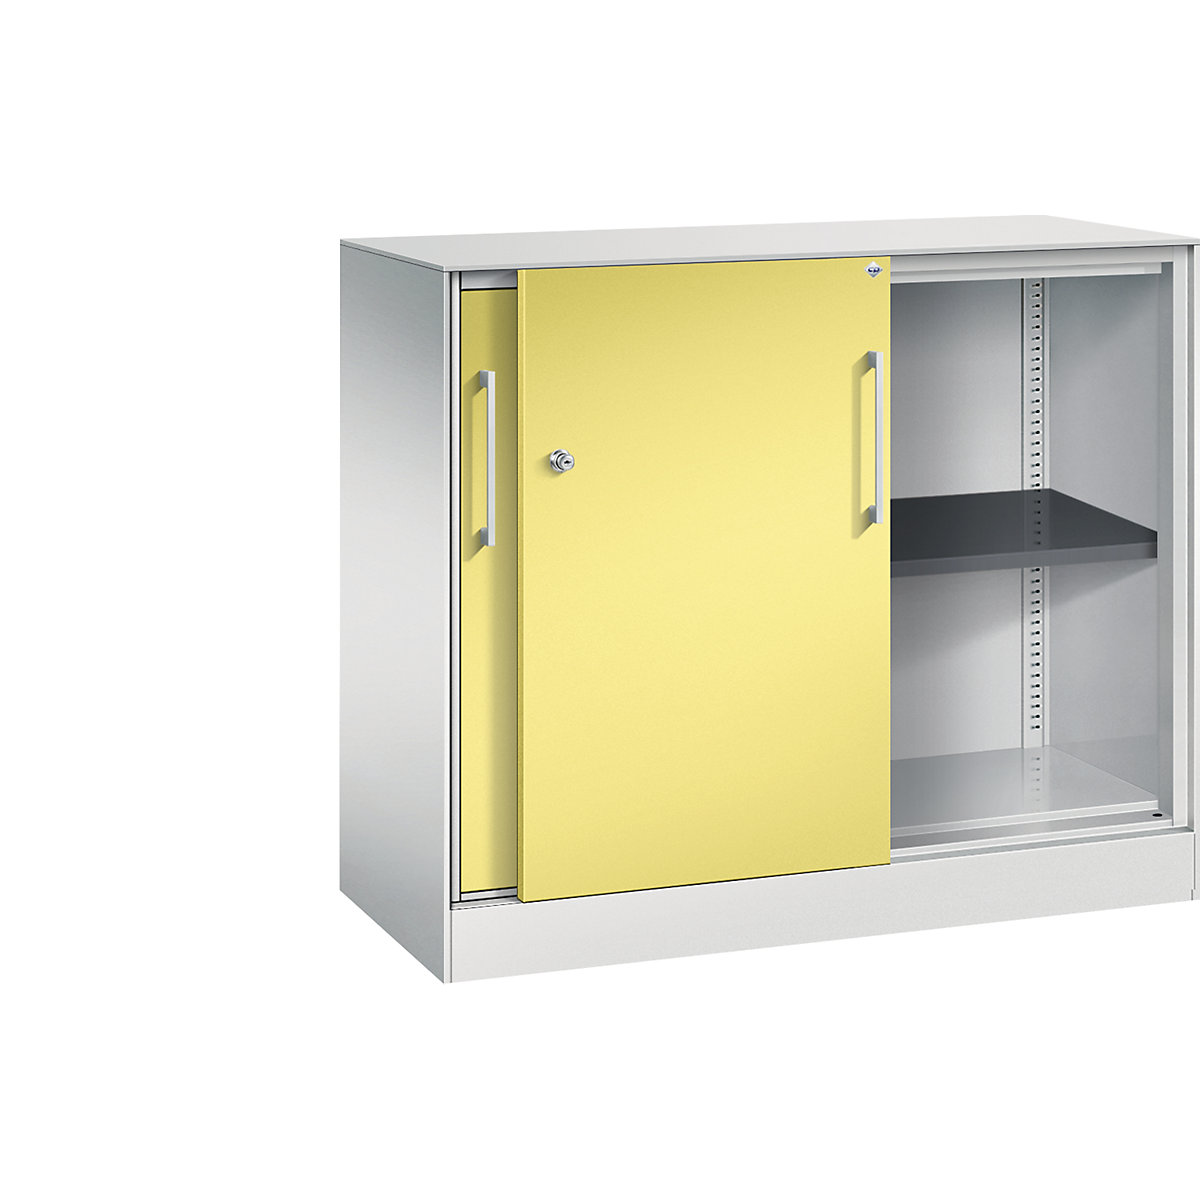 C+P – Skříň s posuvnými dveřmi ASISTO, výška 897 mm, šířka 1000 mm, světlá šedá/sírová žlutá